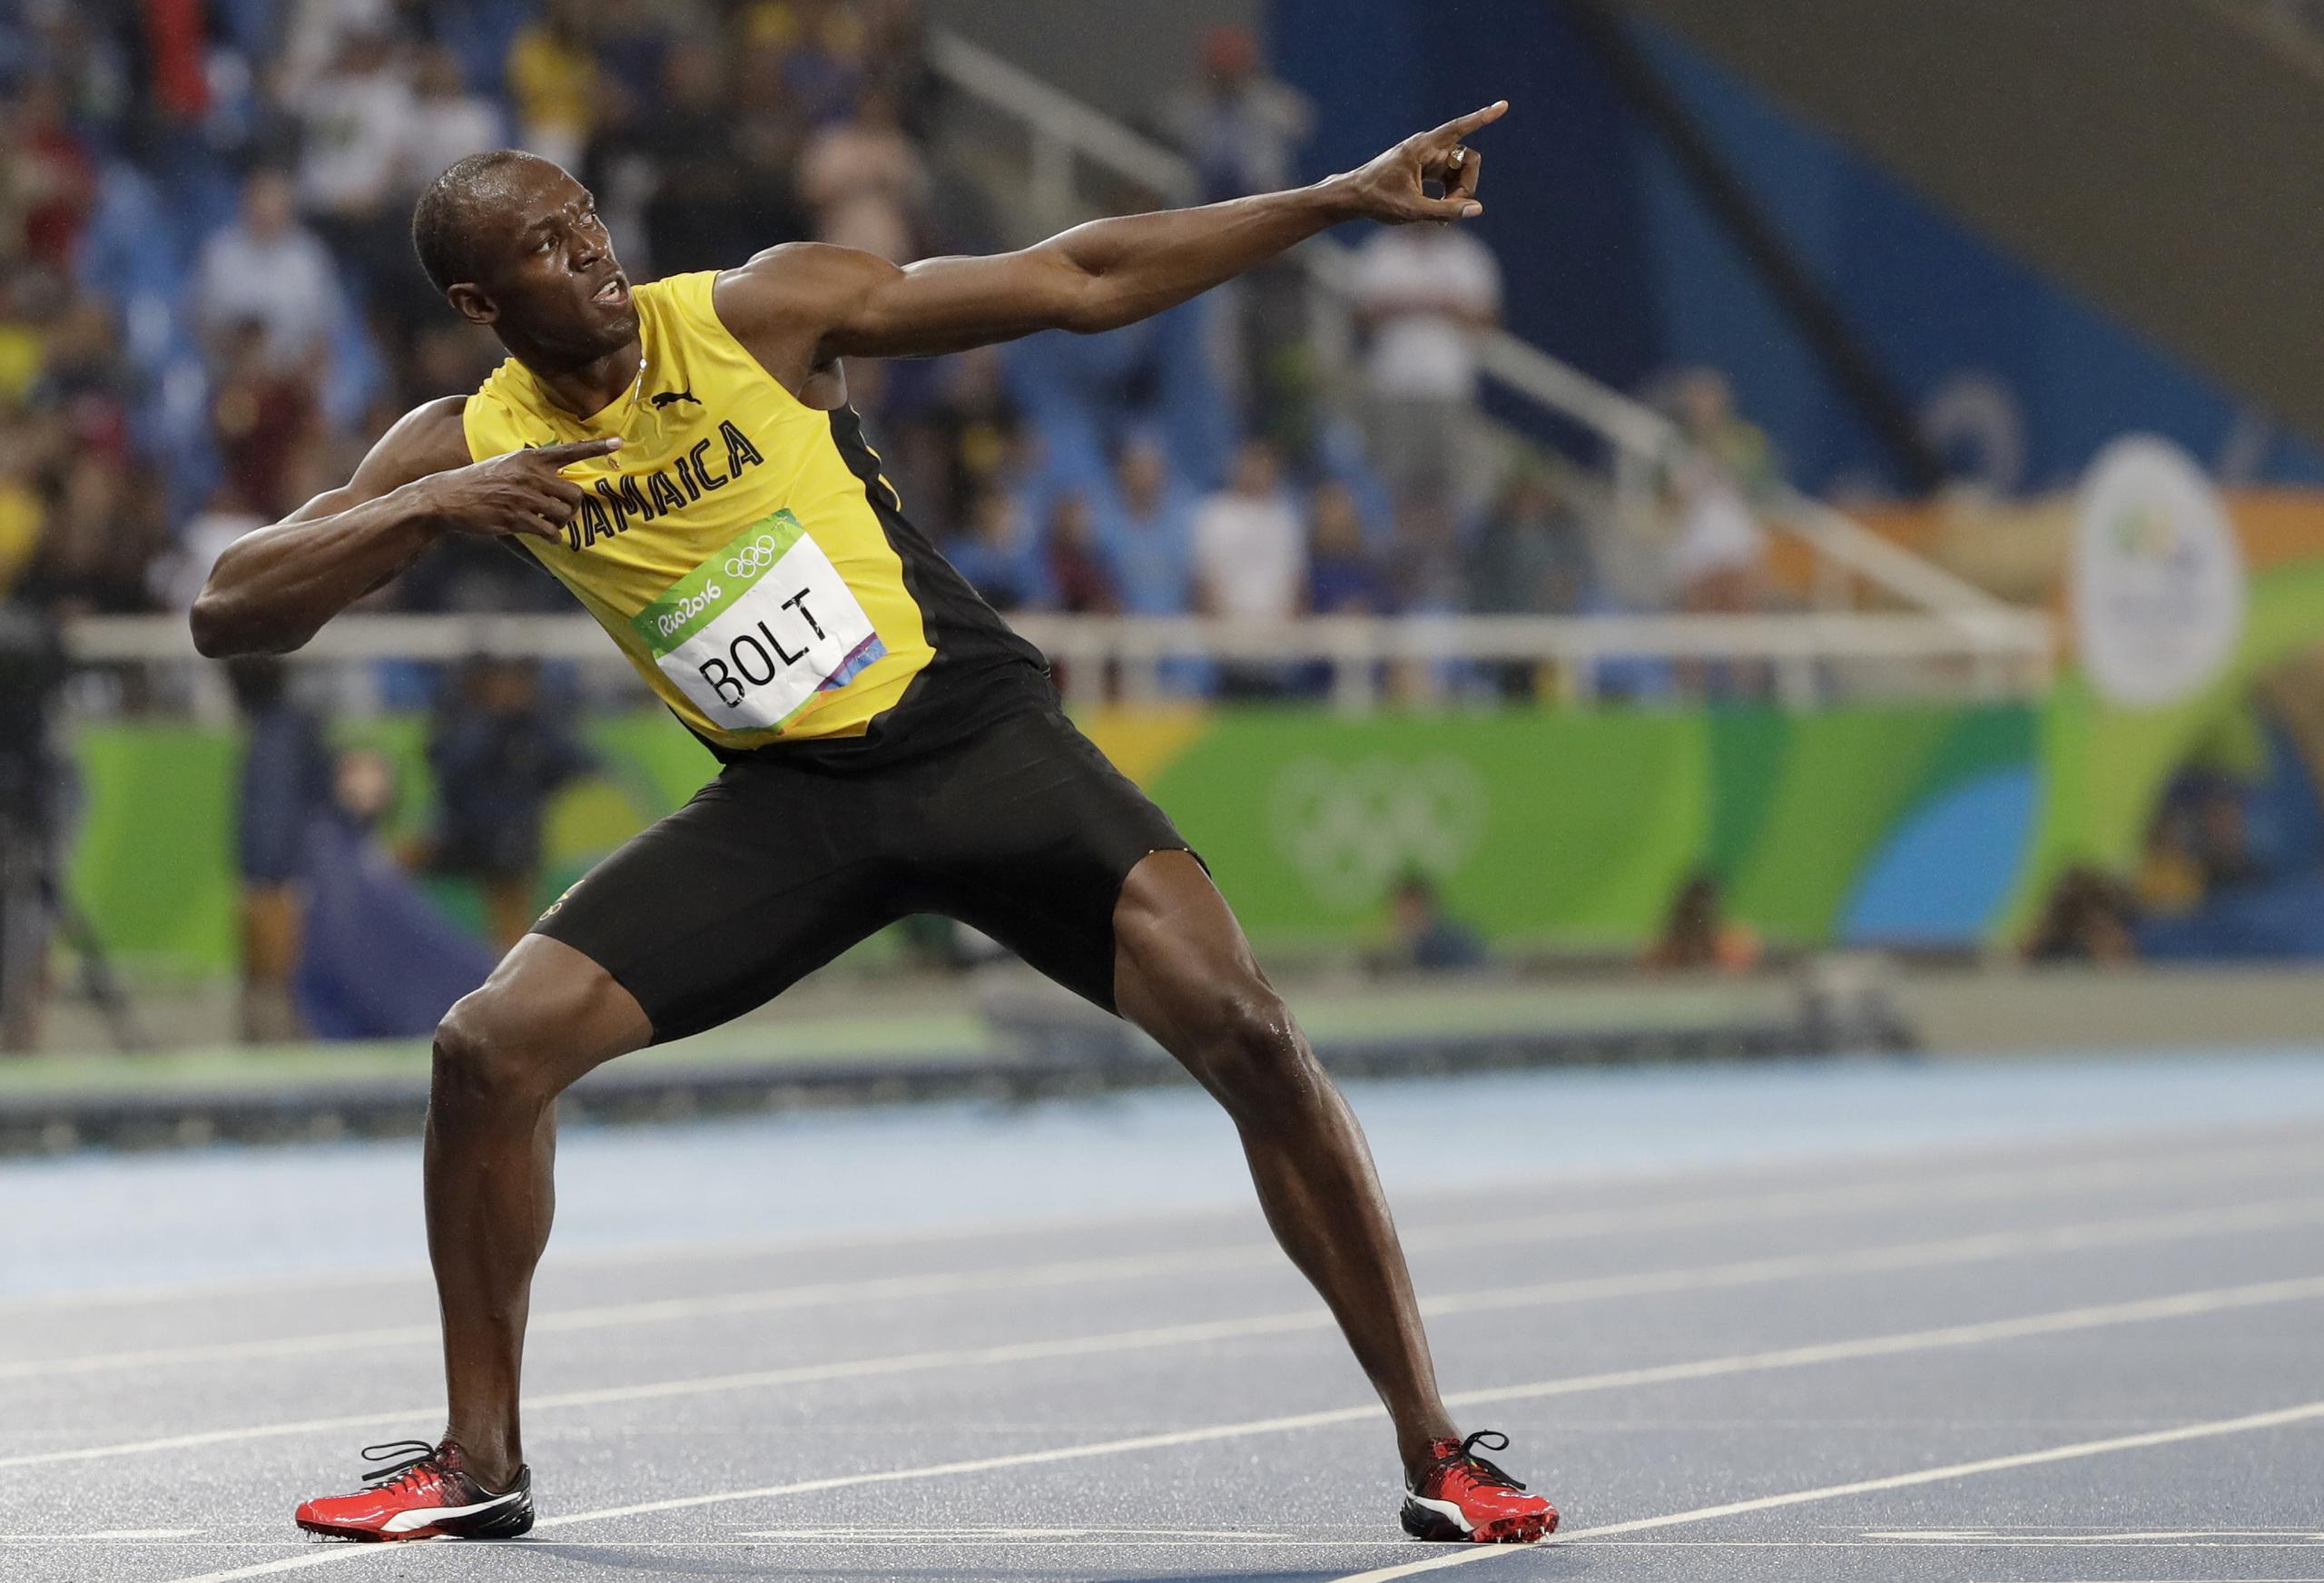 Desde 2008 a 2016, Bolt superó todas las marcas posibles en los Juegos Olímpicos, incluso las suyas, obteniendo nueve preseas de oro desde los de Pekín en 2008, hasta los de Río de Janeiro en 2016.